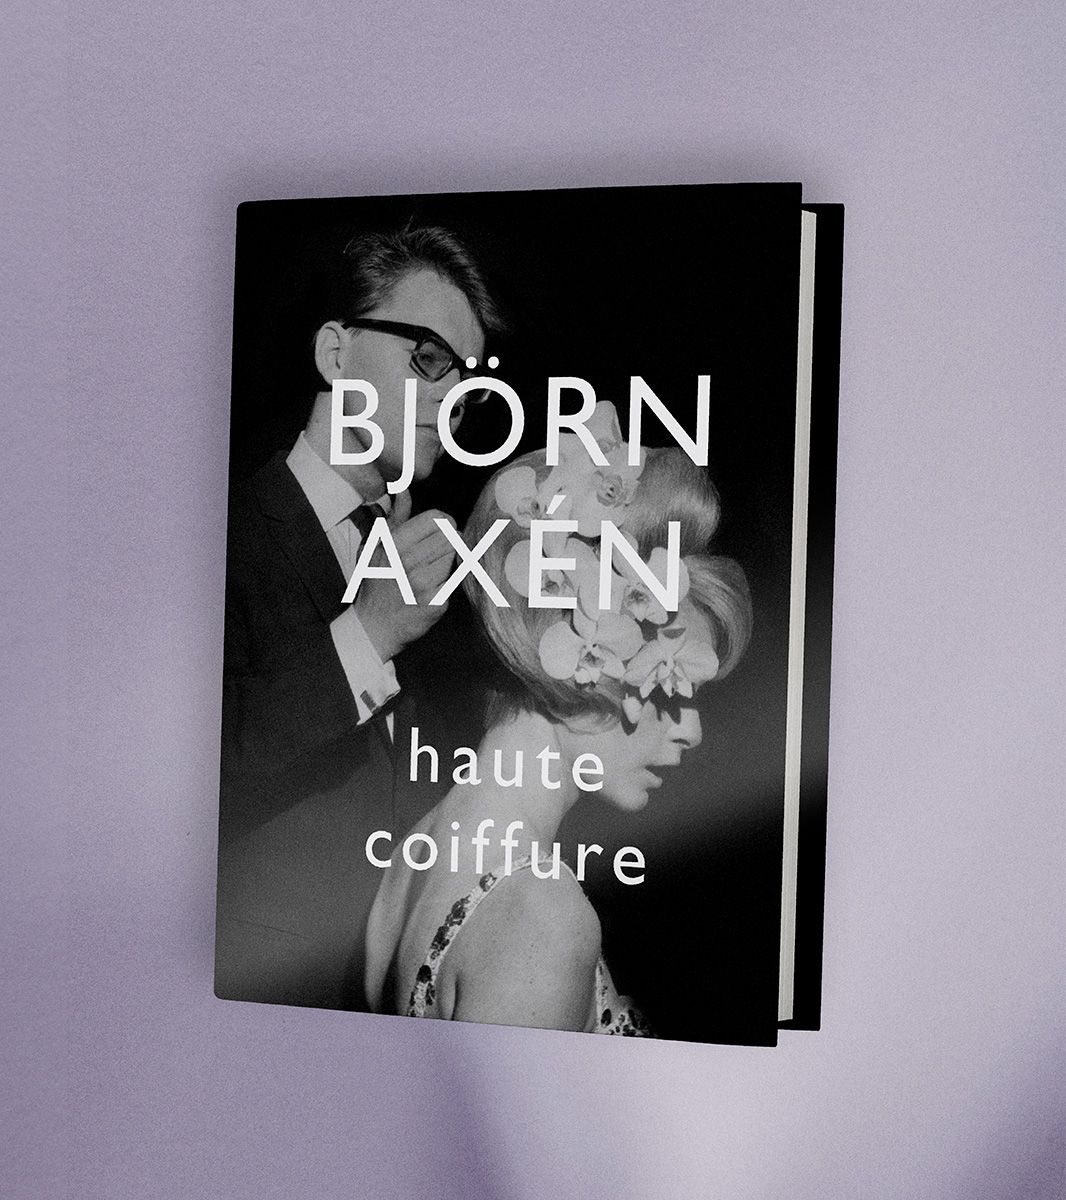 Björn Axén haute coiffure - English